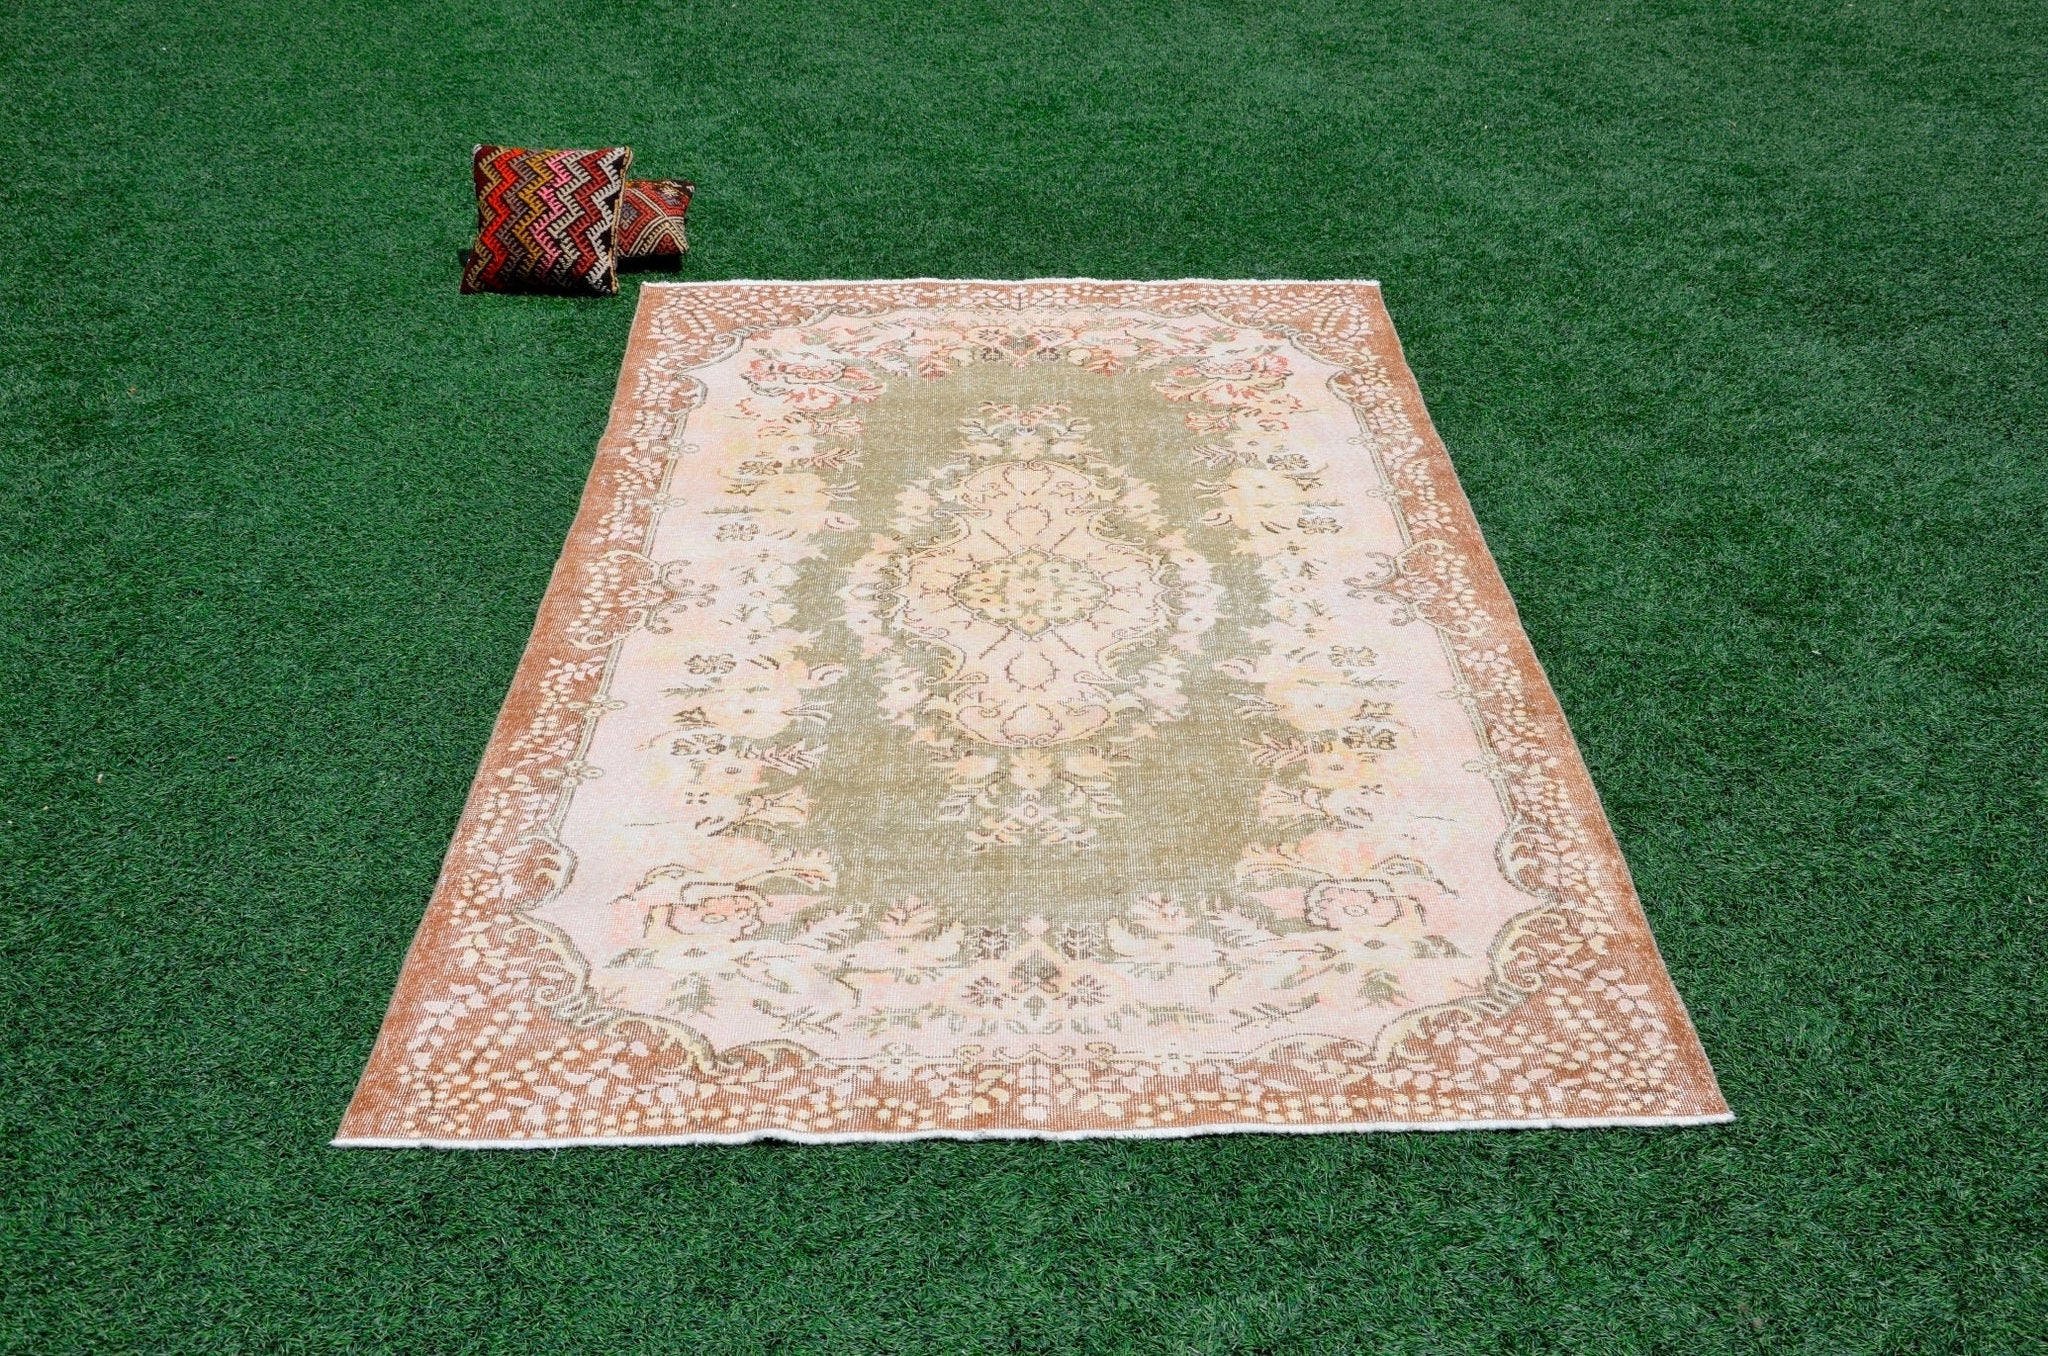 Turkish Handmade large Vintage rug for home decor, oversize rug, area rug oushak rug boho rug bedroom rug kitchen rug  kilim rug, rugs 6x10, 665455